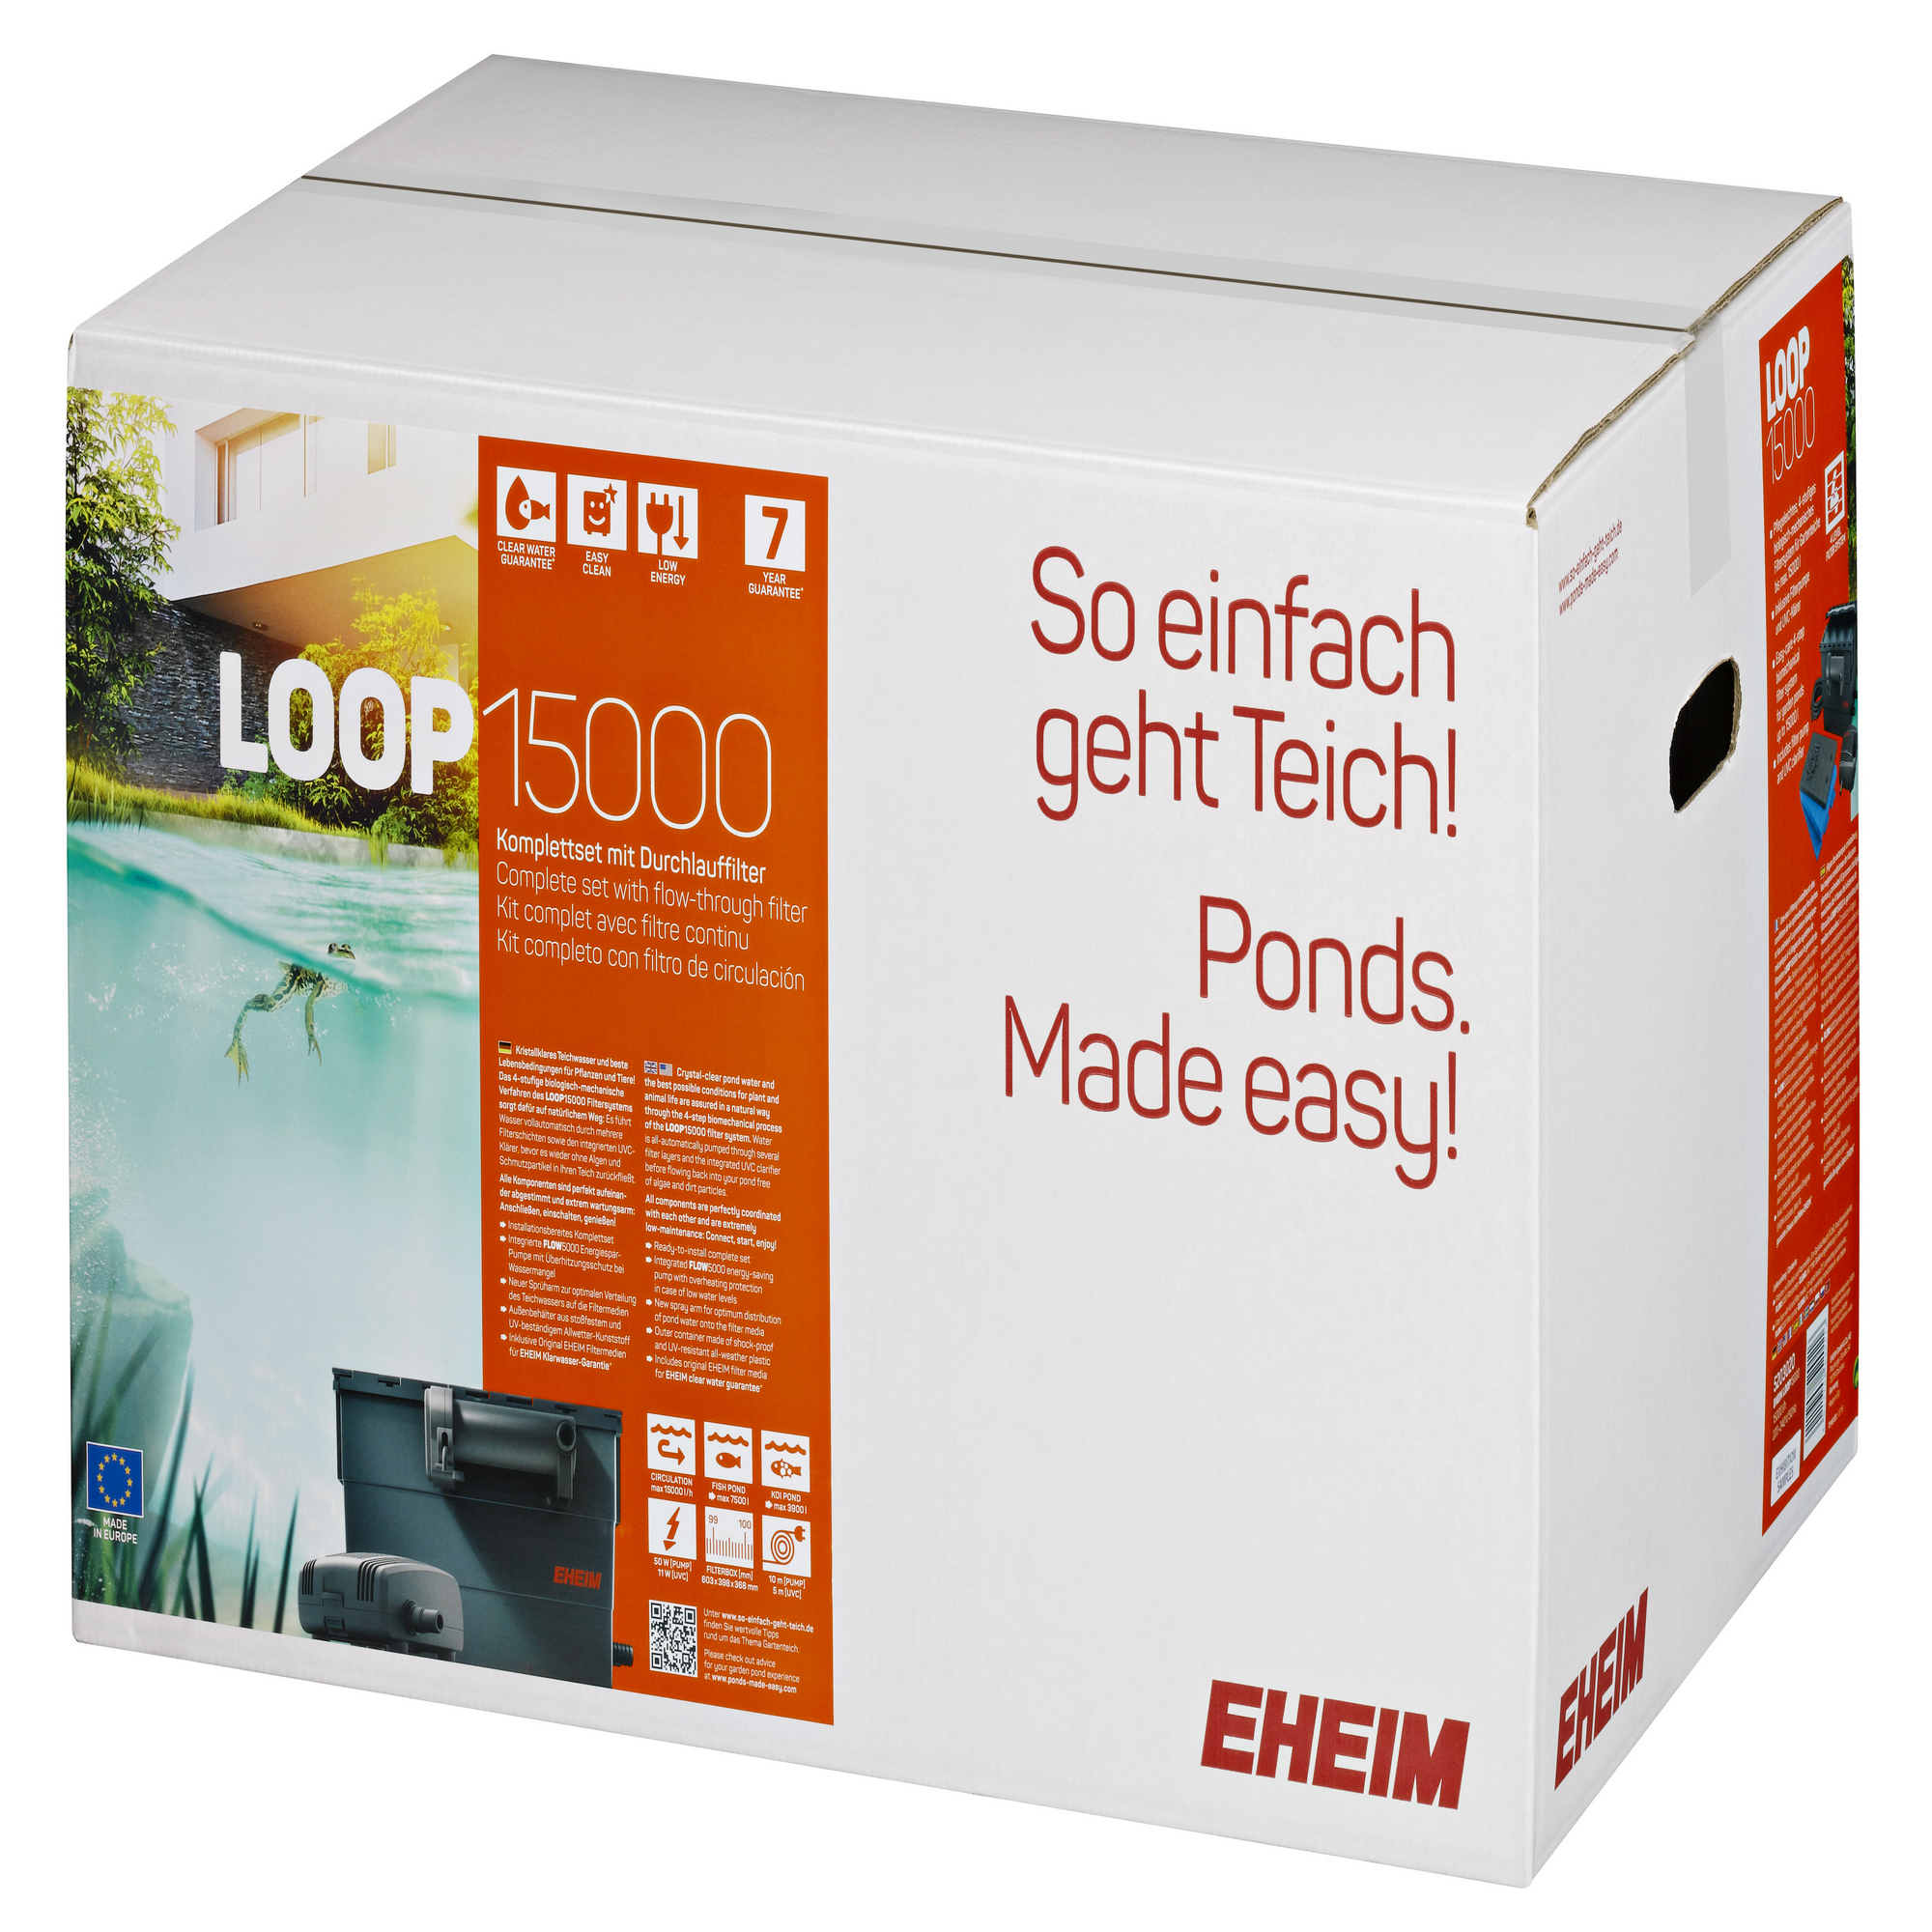 EHEIM LOOP 15000 Komplett-Set mit Durchlauffilter und UV-Klärer + product picture